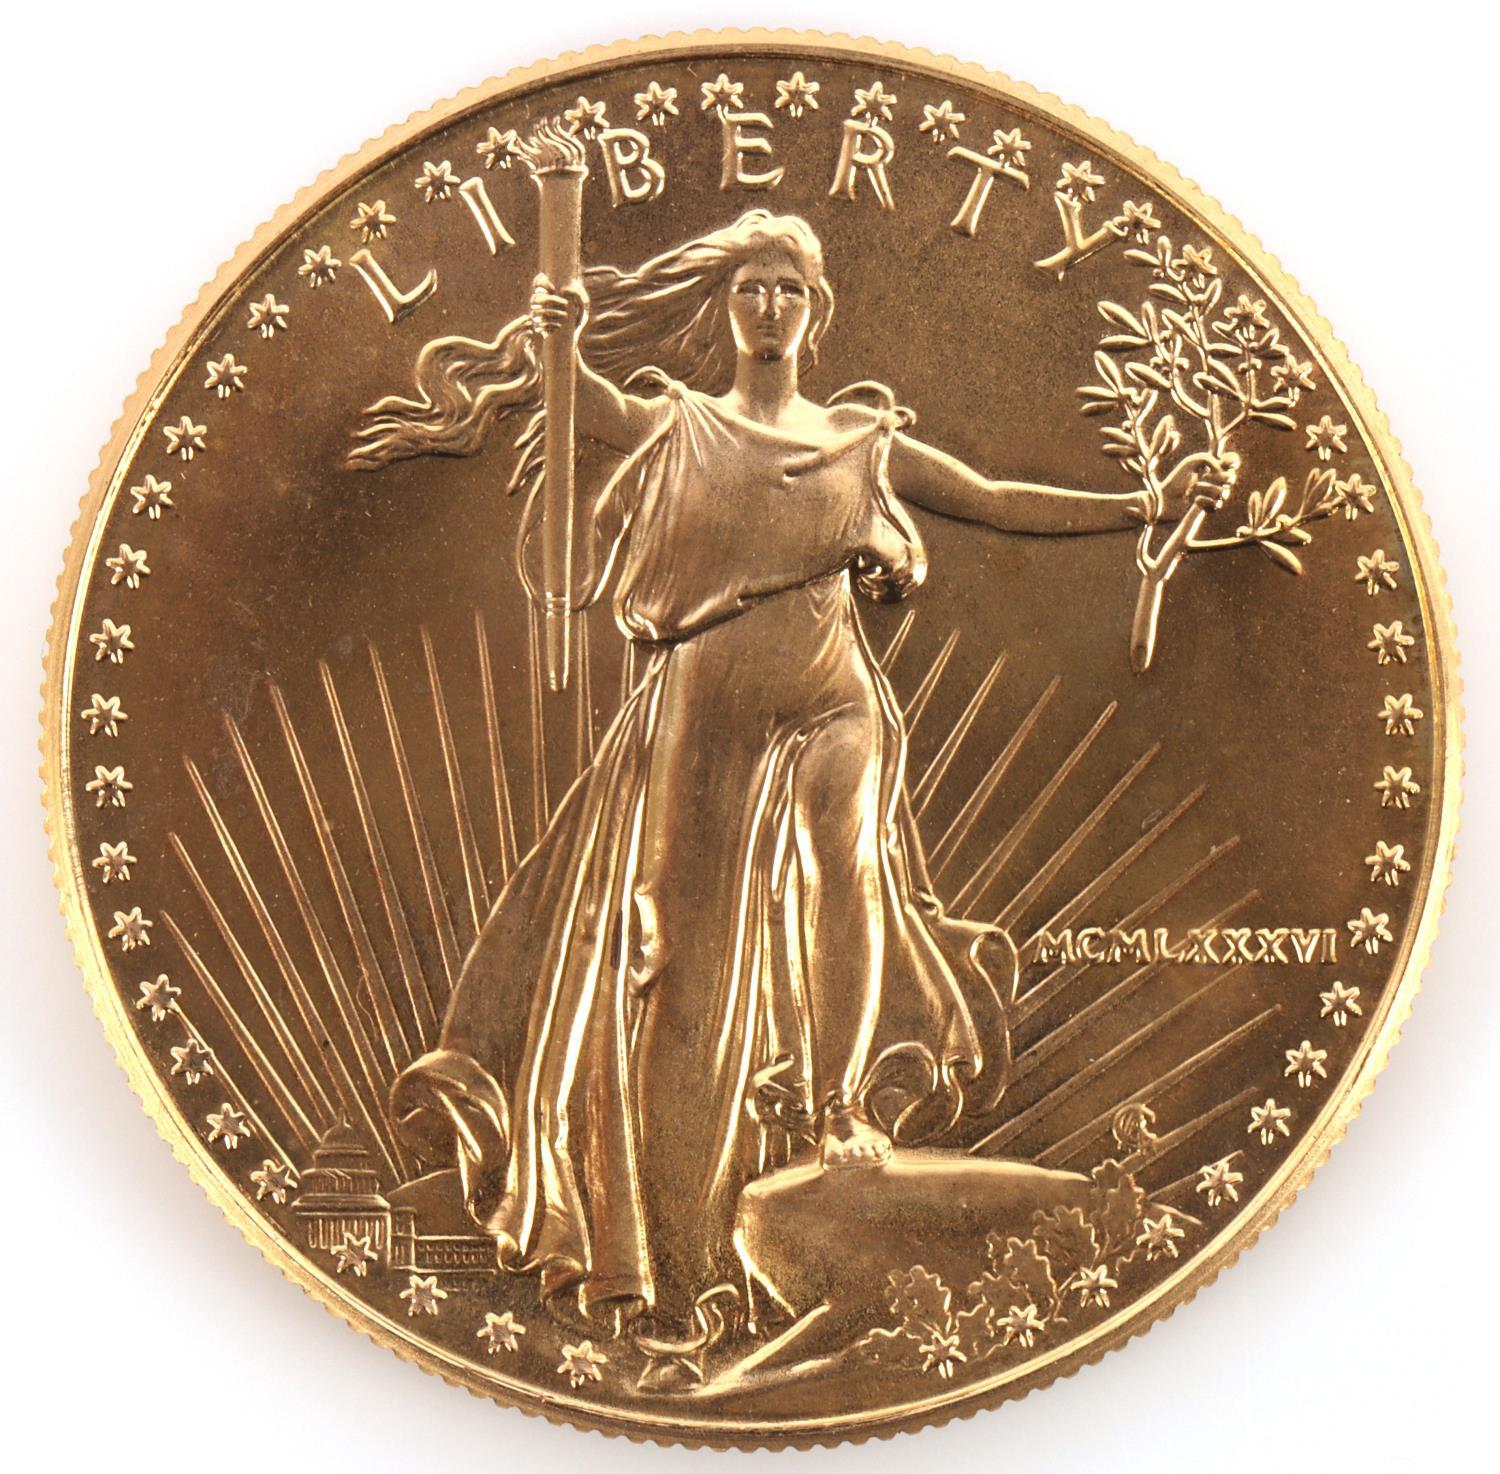 1986 AMERICAN EAGLE 1 OZ GOLD COIN